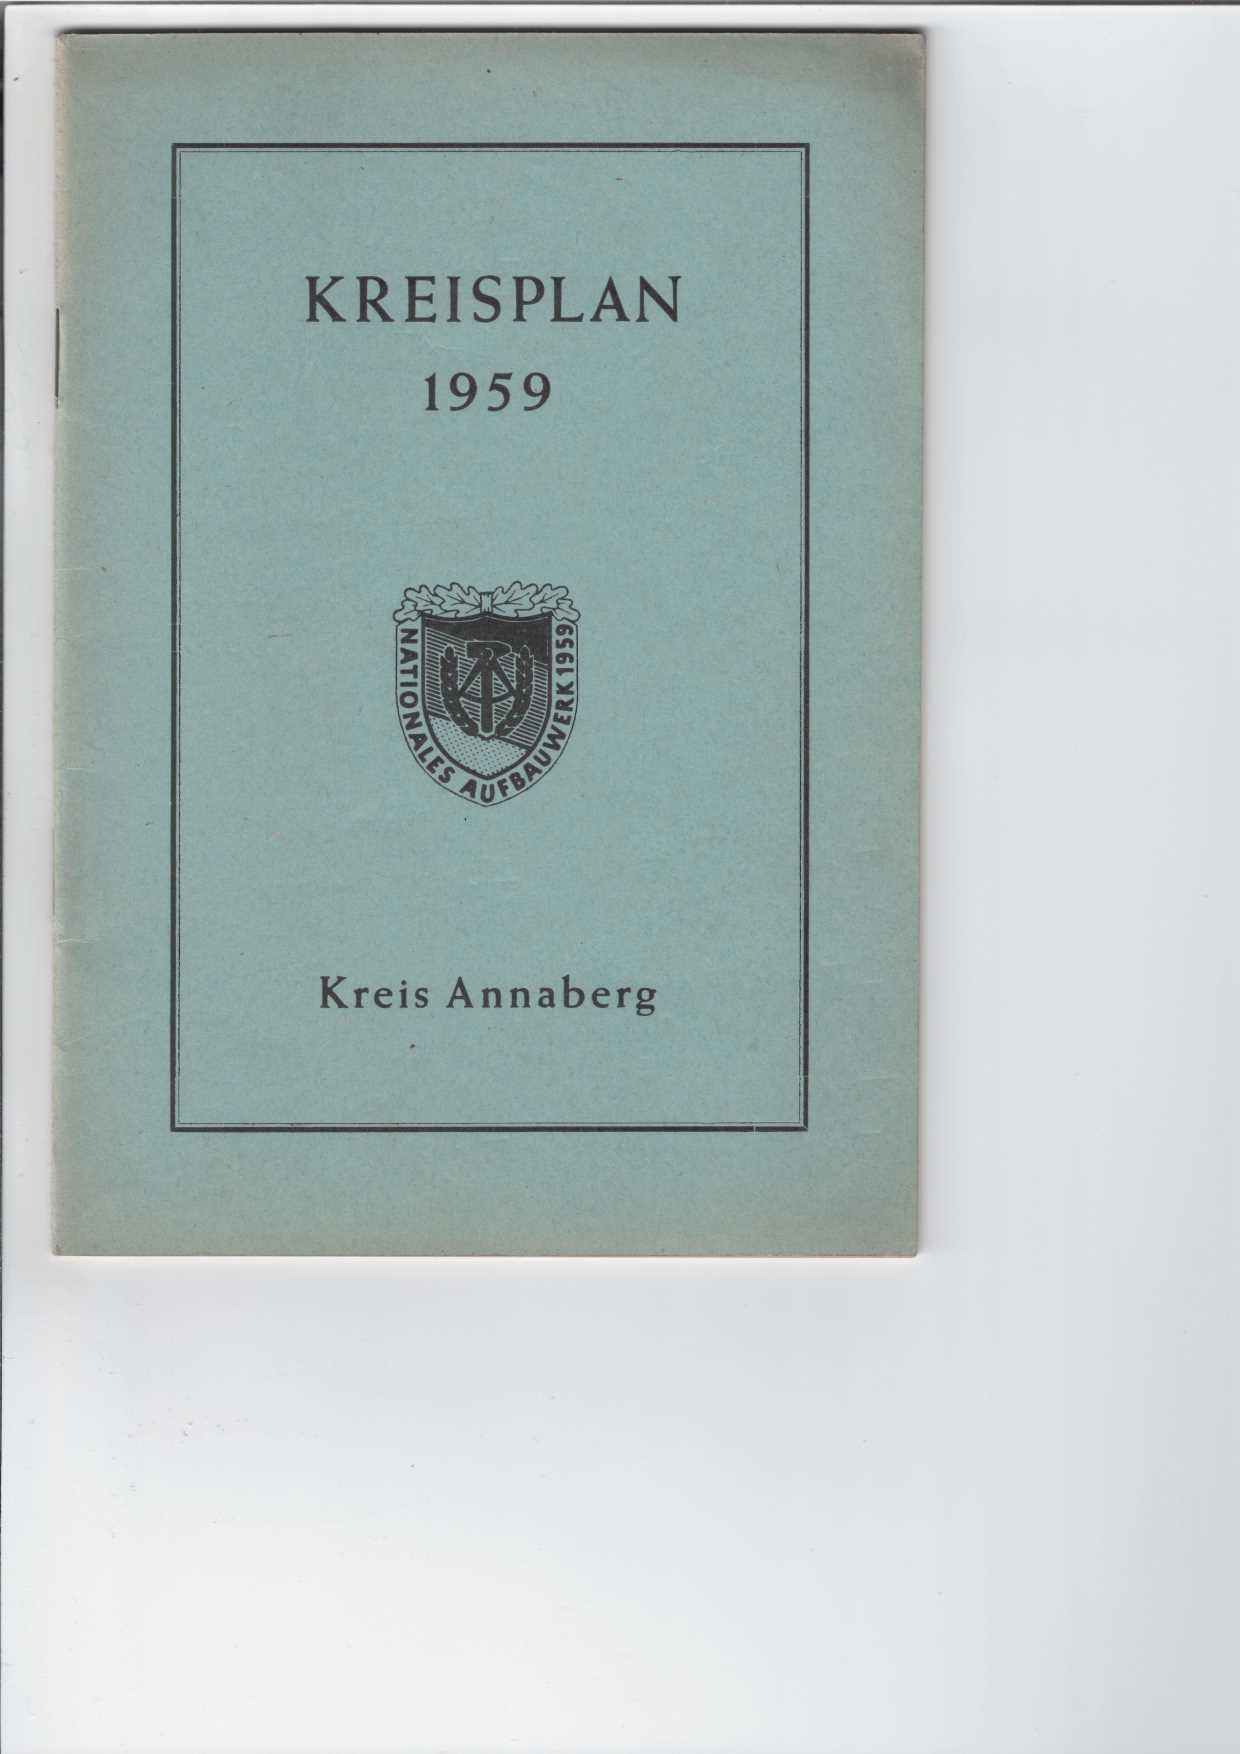   Kreisplan 1959 - Kreis Annaberg. 